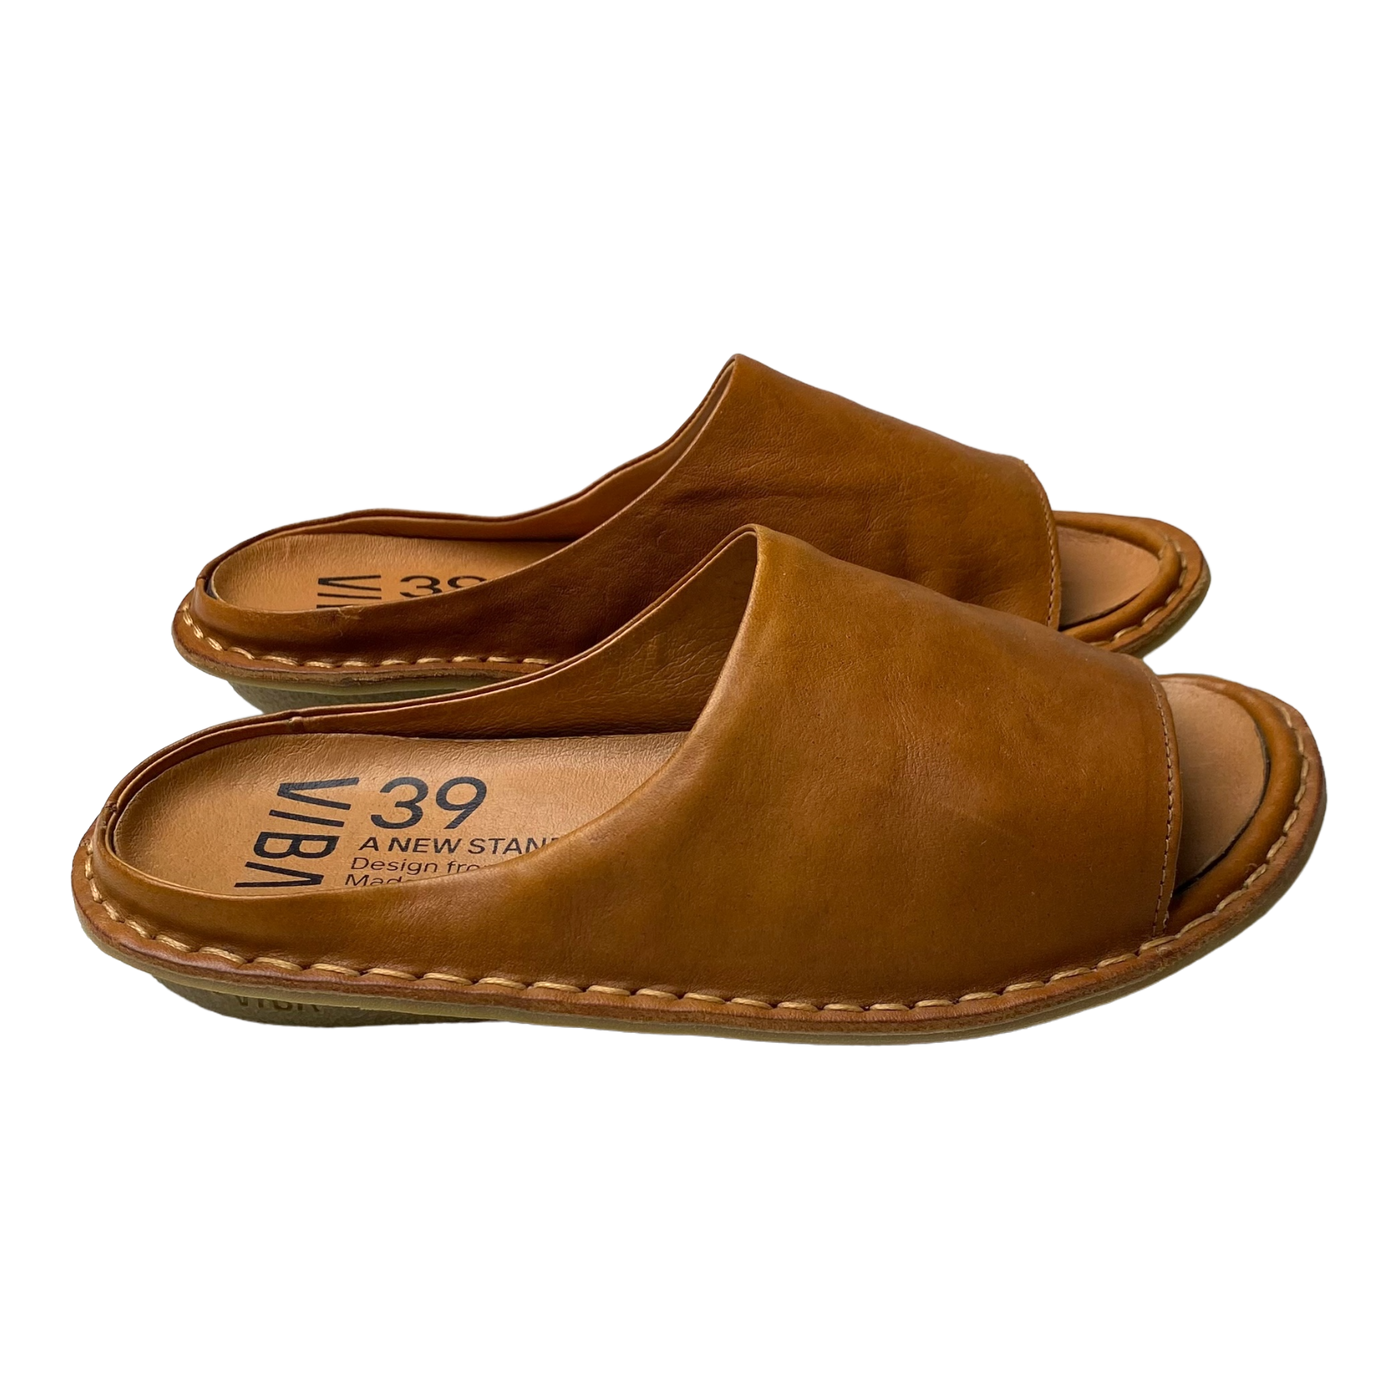 VIBAe Saint Tropez leather sandals, cognac brown | 39